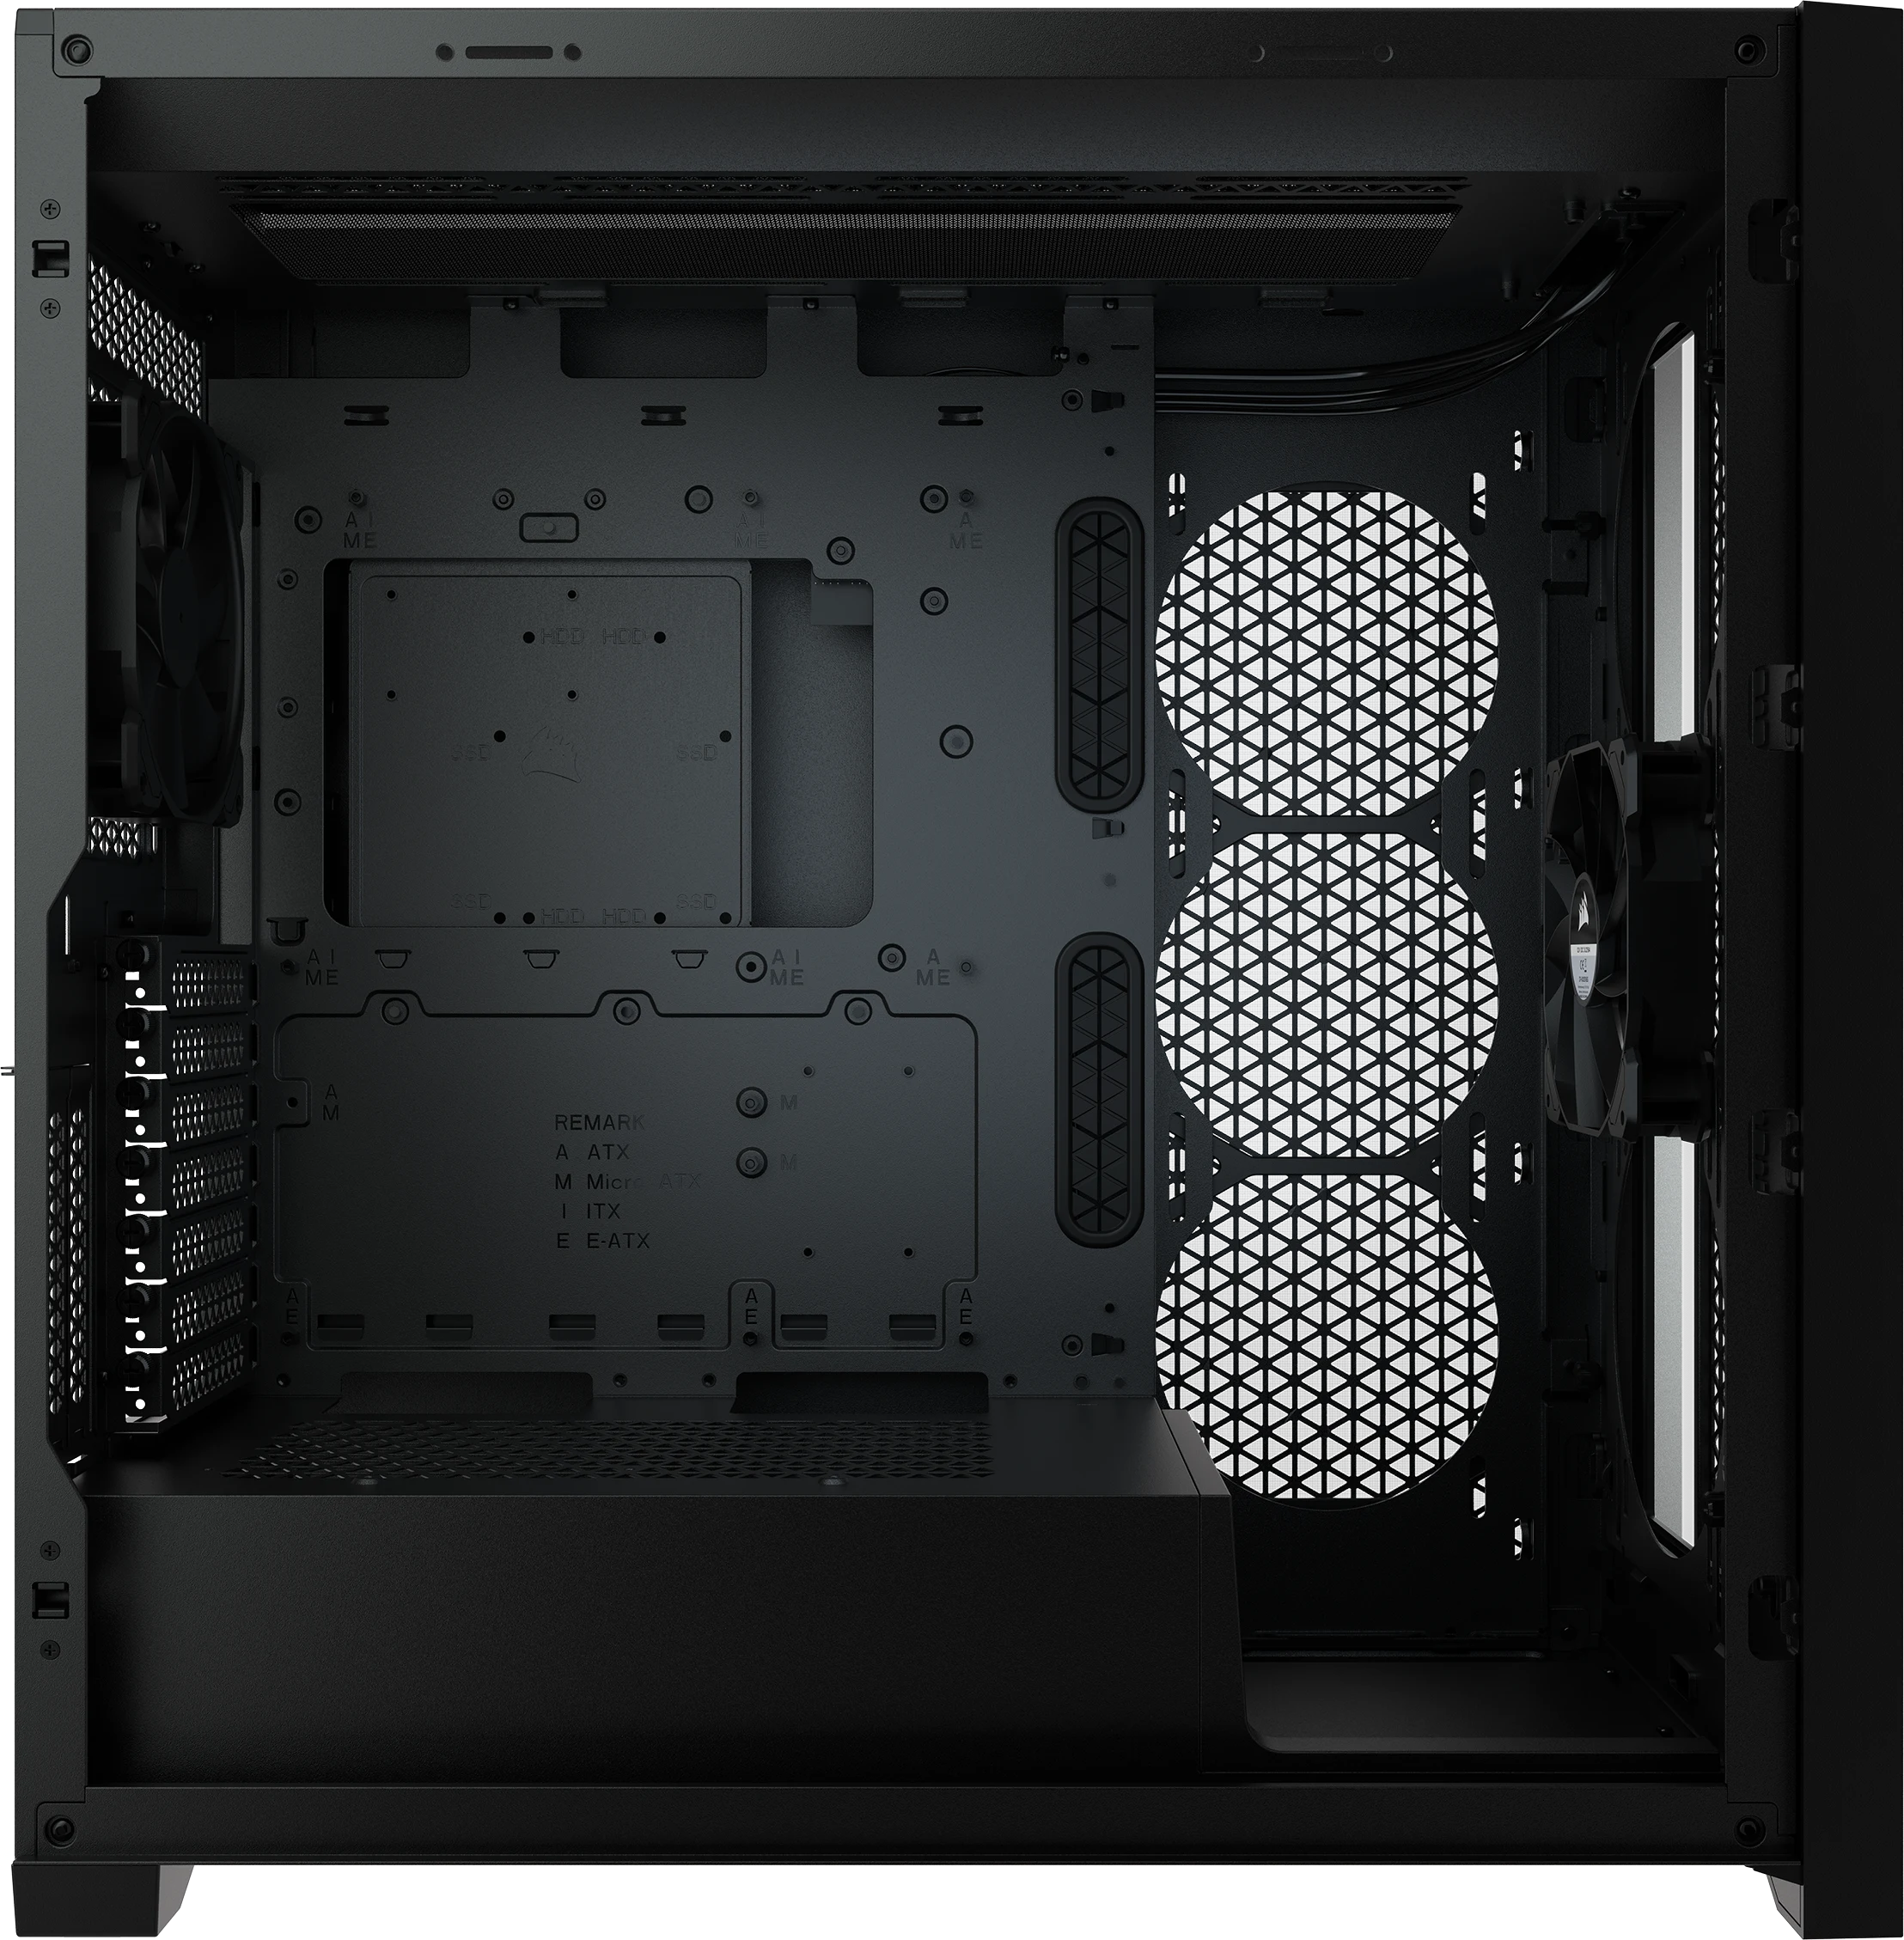 Corsair 5000D AIRFLOW Mid Tower Desktop Case (Black)